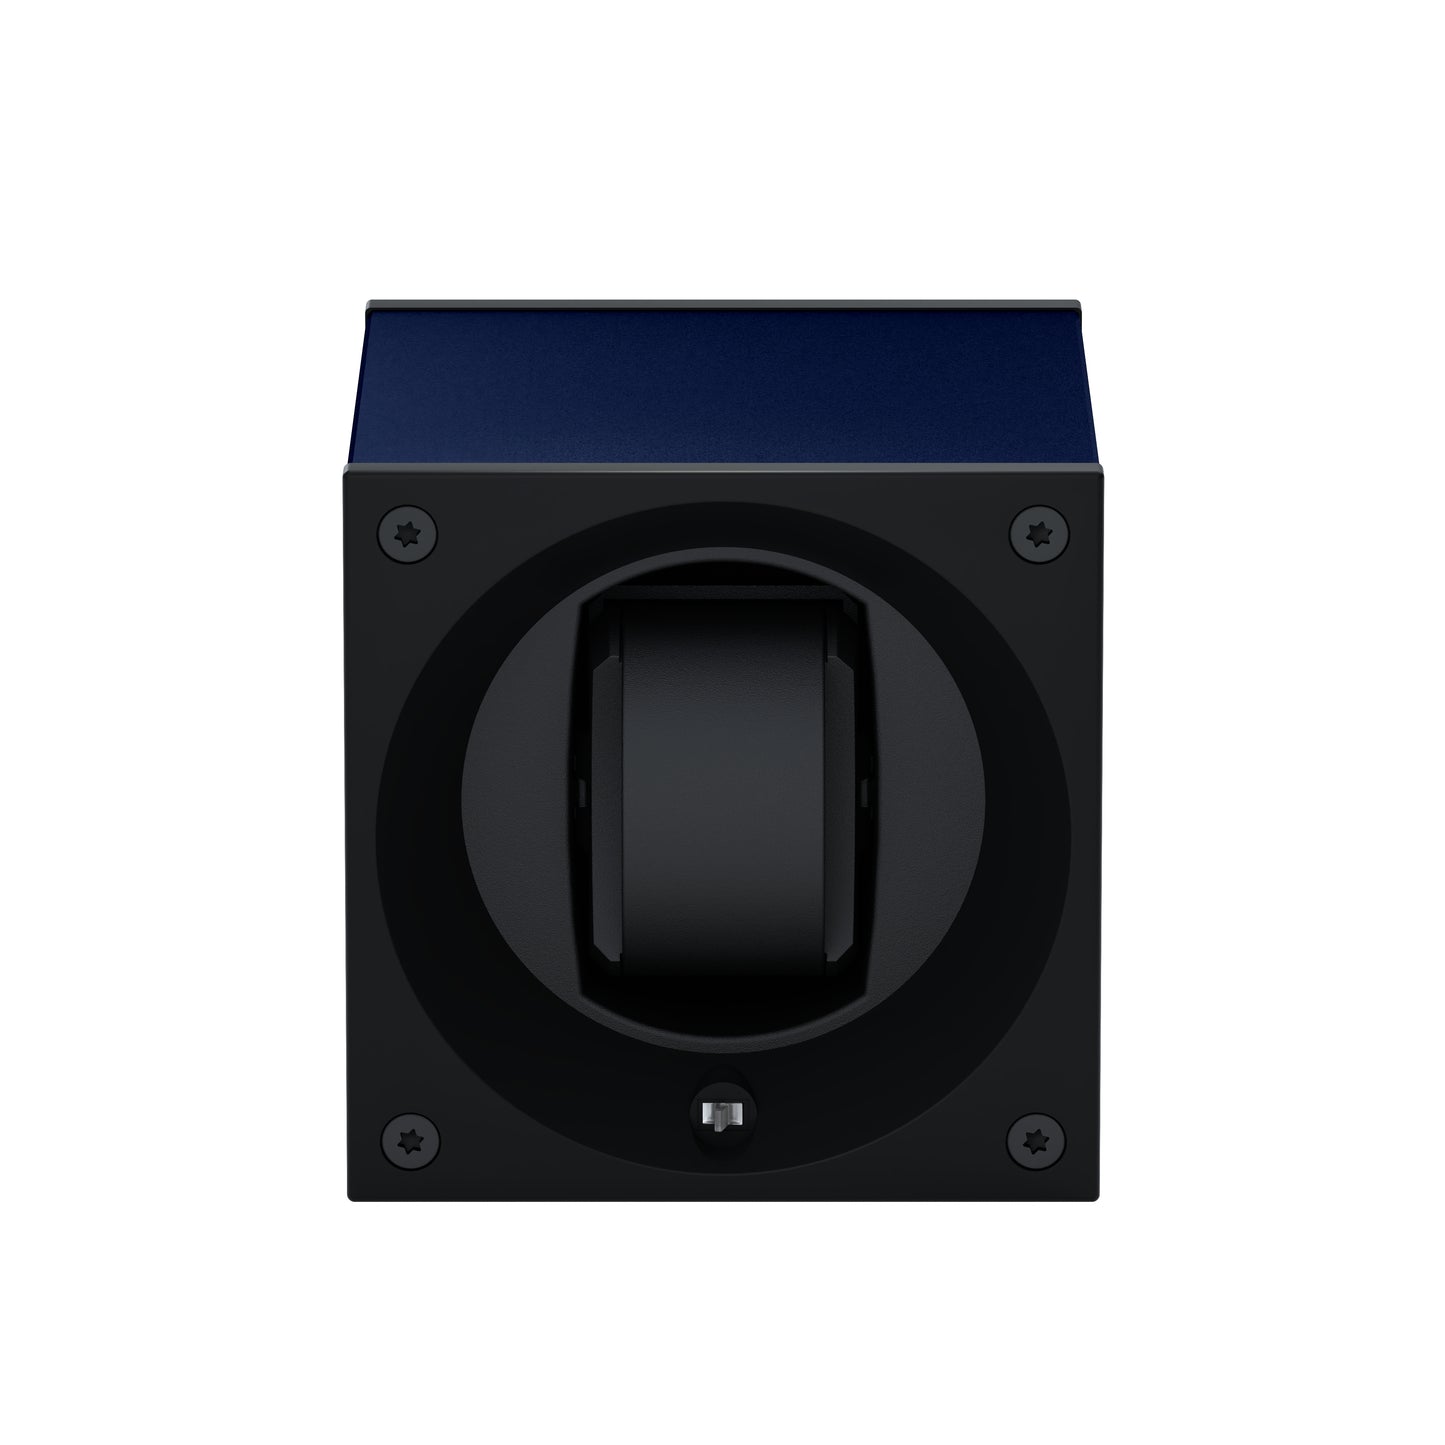 Masterbox 1 montre Aluminium Bleu Marine : écrin rotatif pour montre automatique